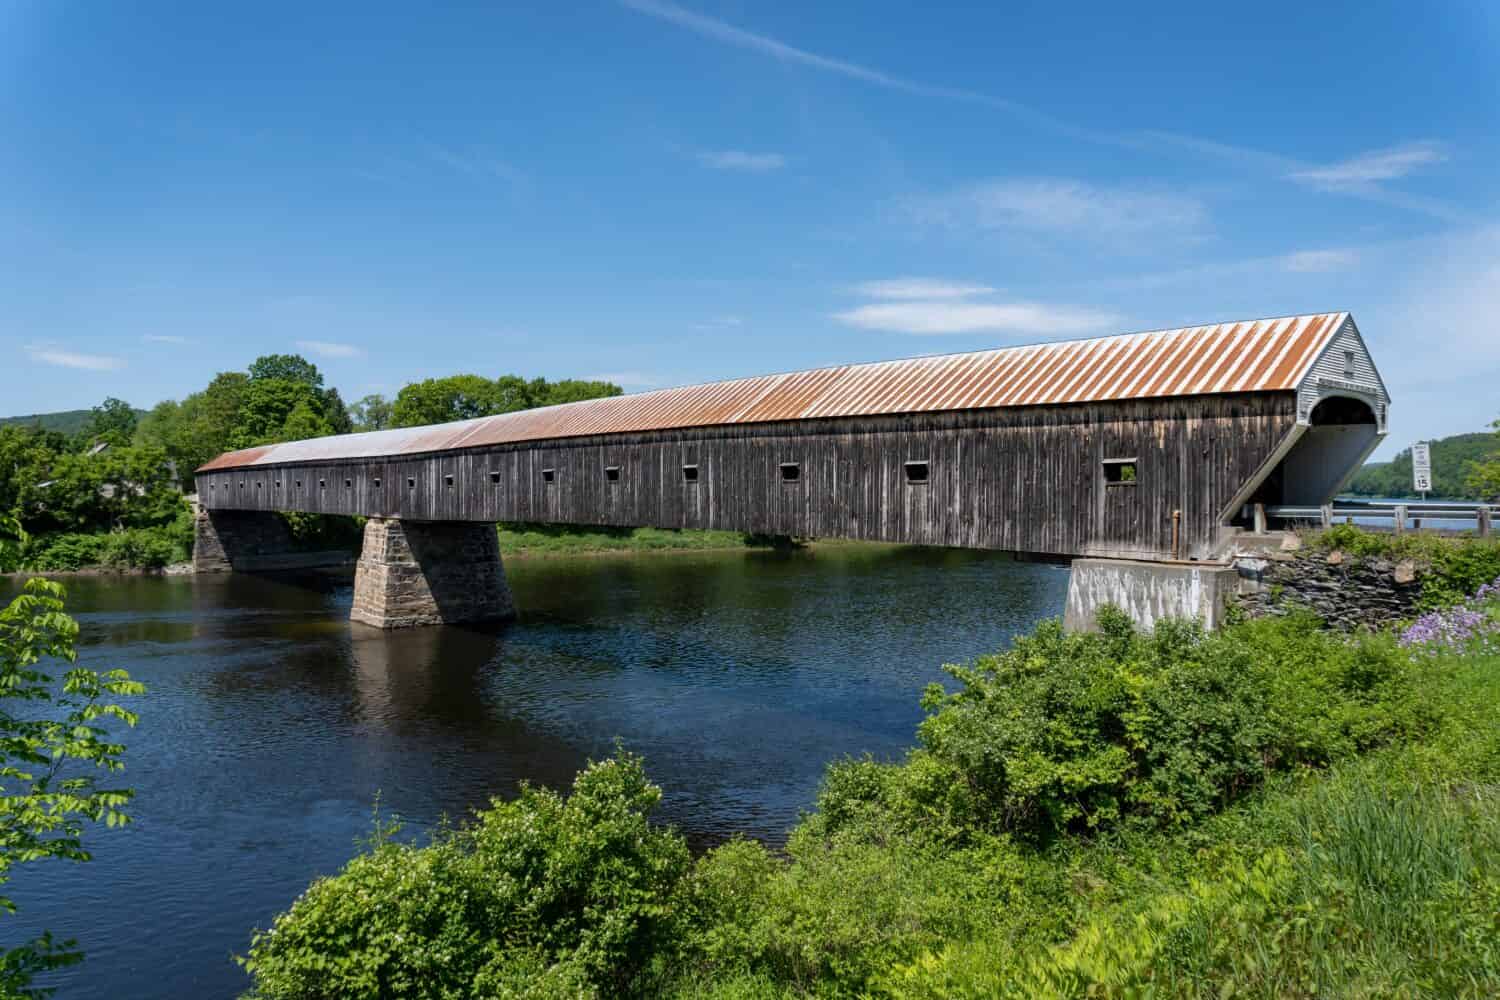 Ponte coperto della Cornovaglia-Windsor.  Costruito nel 1866, il ponte coperto a due campate più lungo.  Luogo di attraversamento del generale Lafayette.  Attraversa il fiume Connecticut tra la Cornovaglia, nel New Hampshire, e Windsor, nel Vermont.